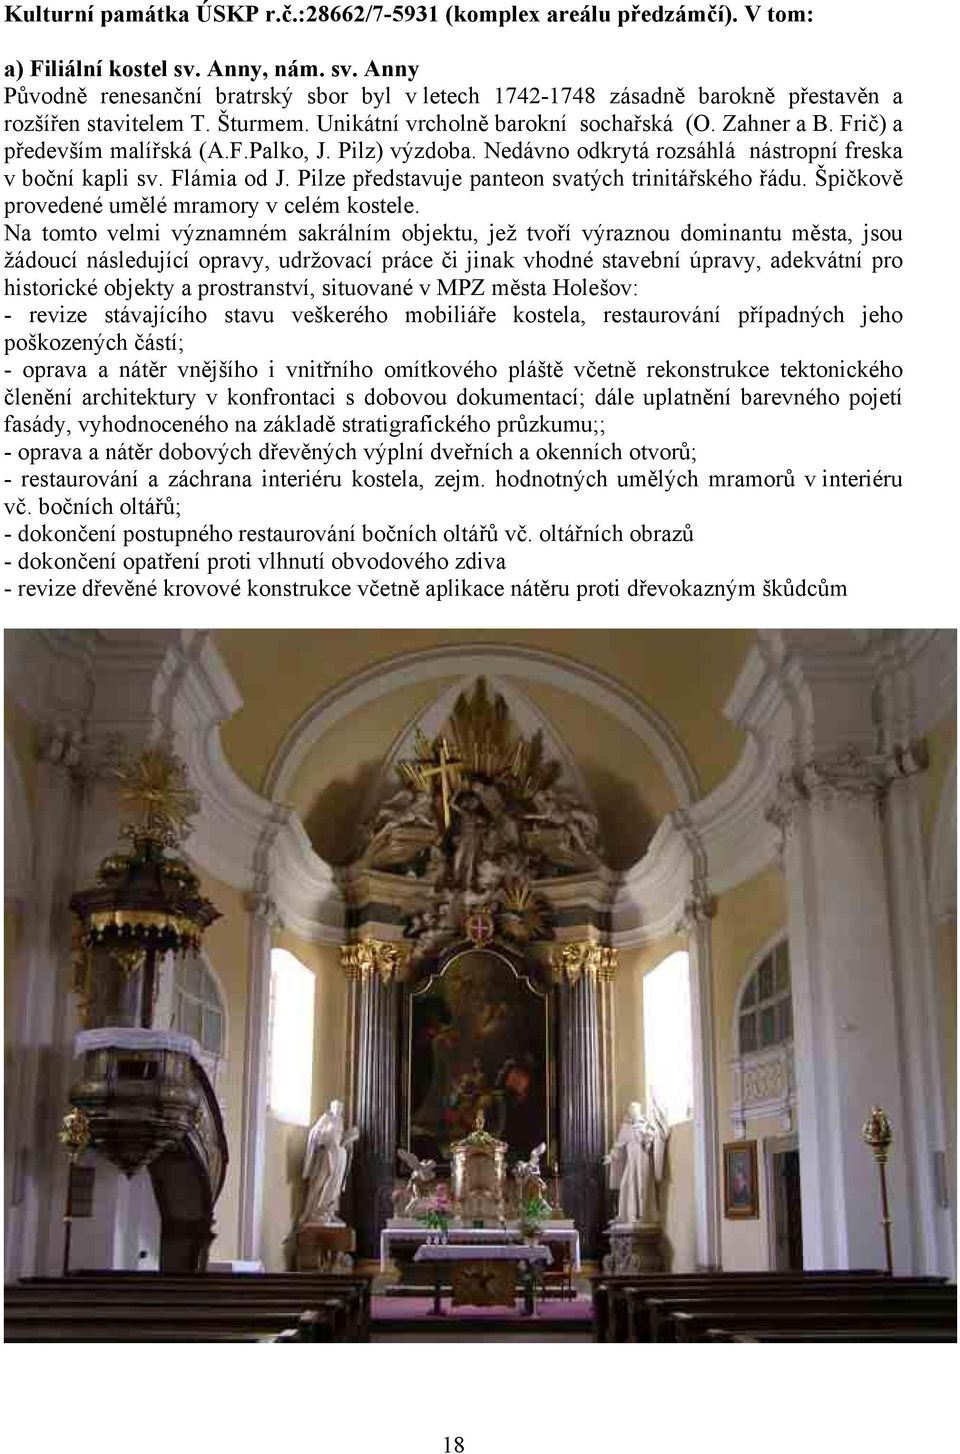 Frič) a především malířská (A.F.Palko, J. Pilz) výzdoba. Nedávno odkrytá rozsáhlá nástropní freska v boční kapli sv. Flámia od J. Pilze představuje panteon svatých trinitářského řádu.